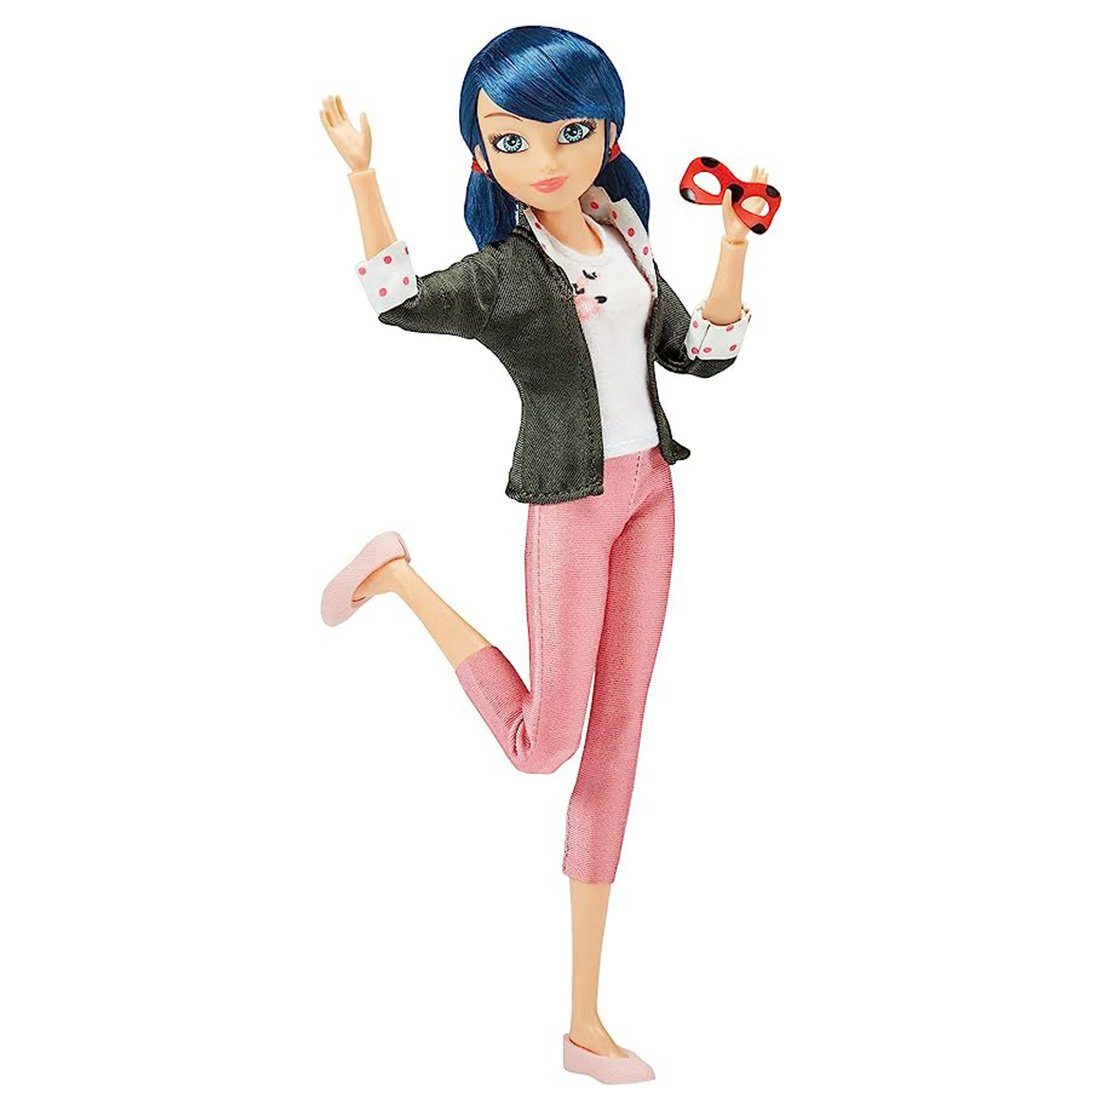 Bandai Merchandise-Figur Miraculous Ladybug Figur von Marinette Dupain-Cheng, 2 Outfits Set, Outfit Set als Marinette und als Ladybug